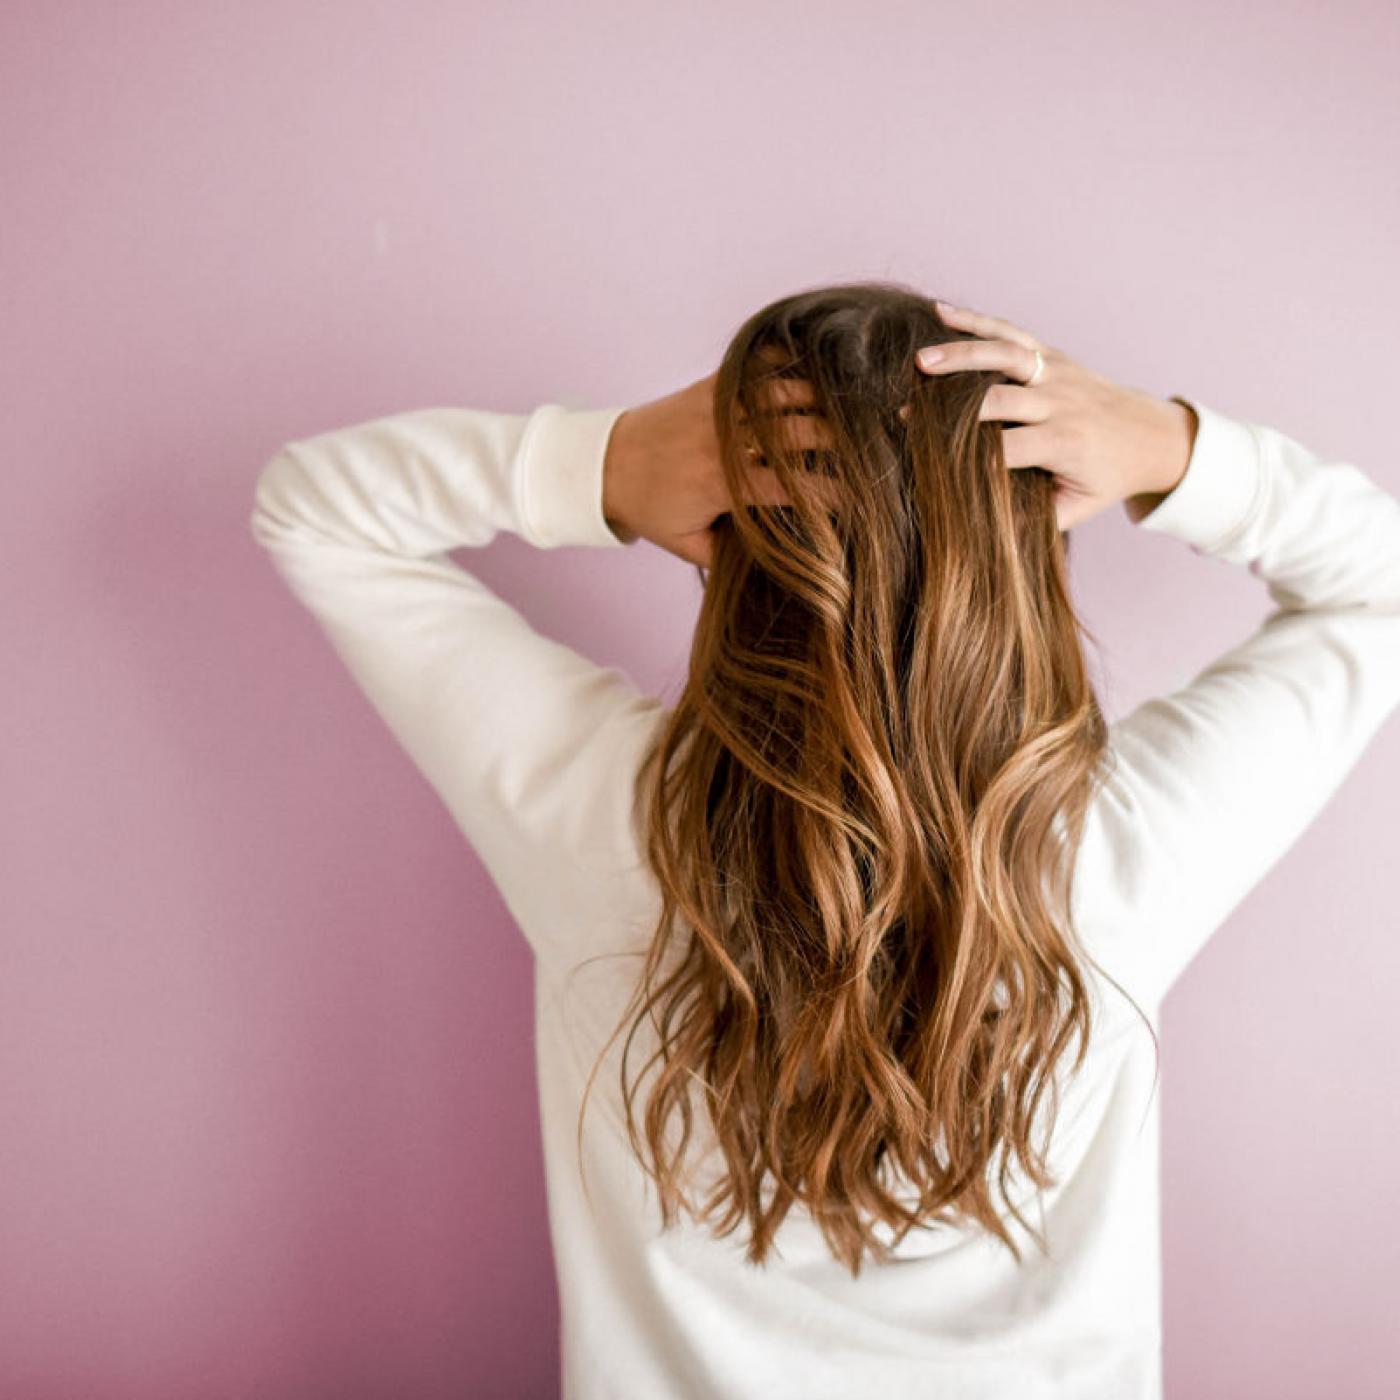 Le Journal des Bonnes Nouvelles : Astuces pour faire pousser vos cheveux plus vite !